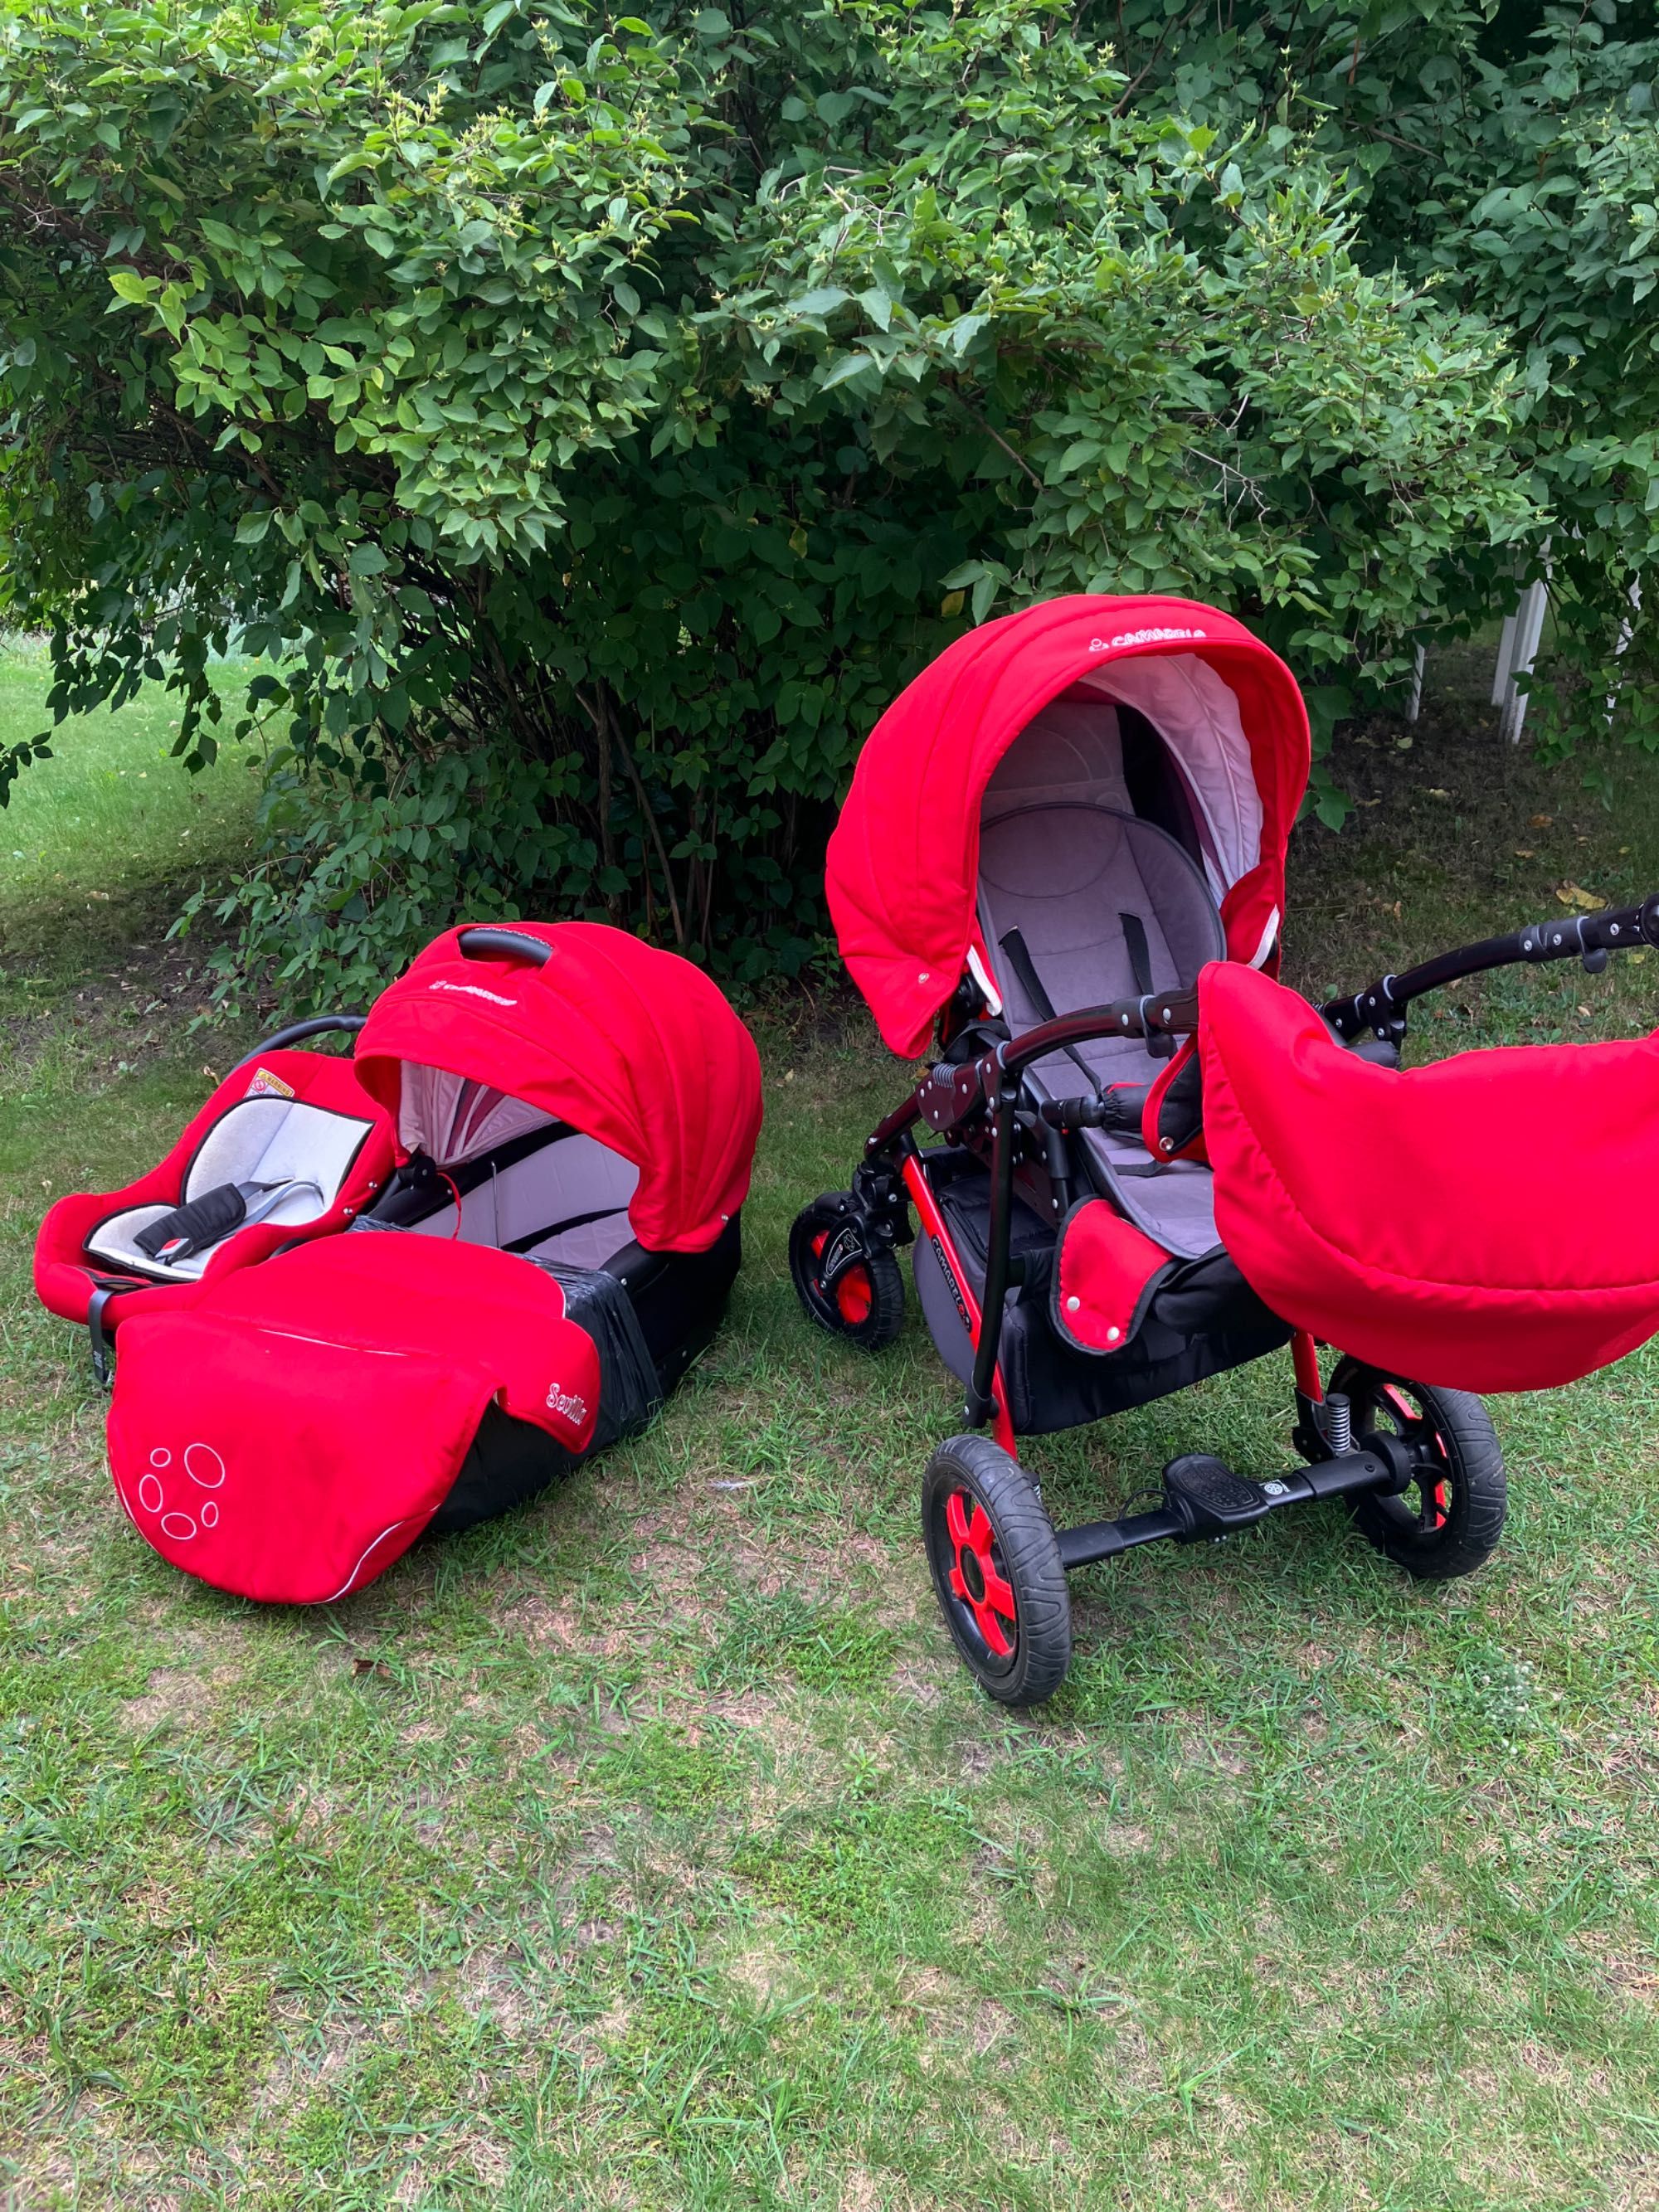 Zadbany wózek gondola +spacerówka+nosidło piękny czerwony kolor